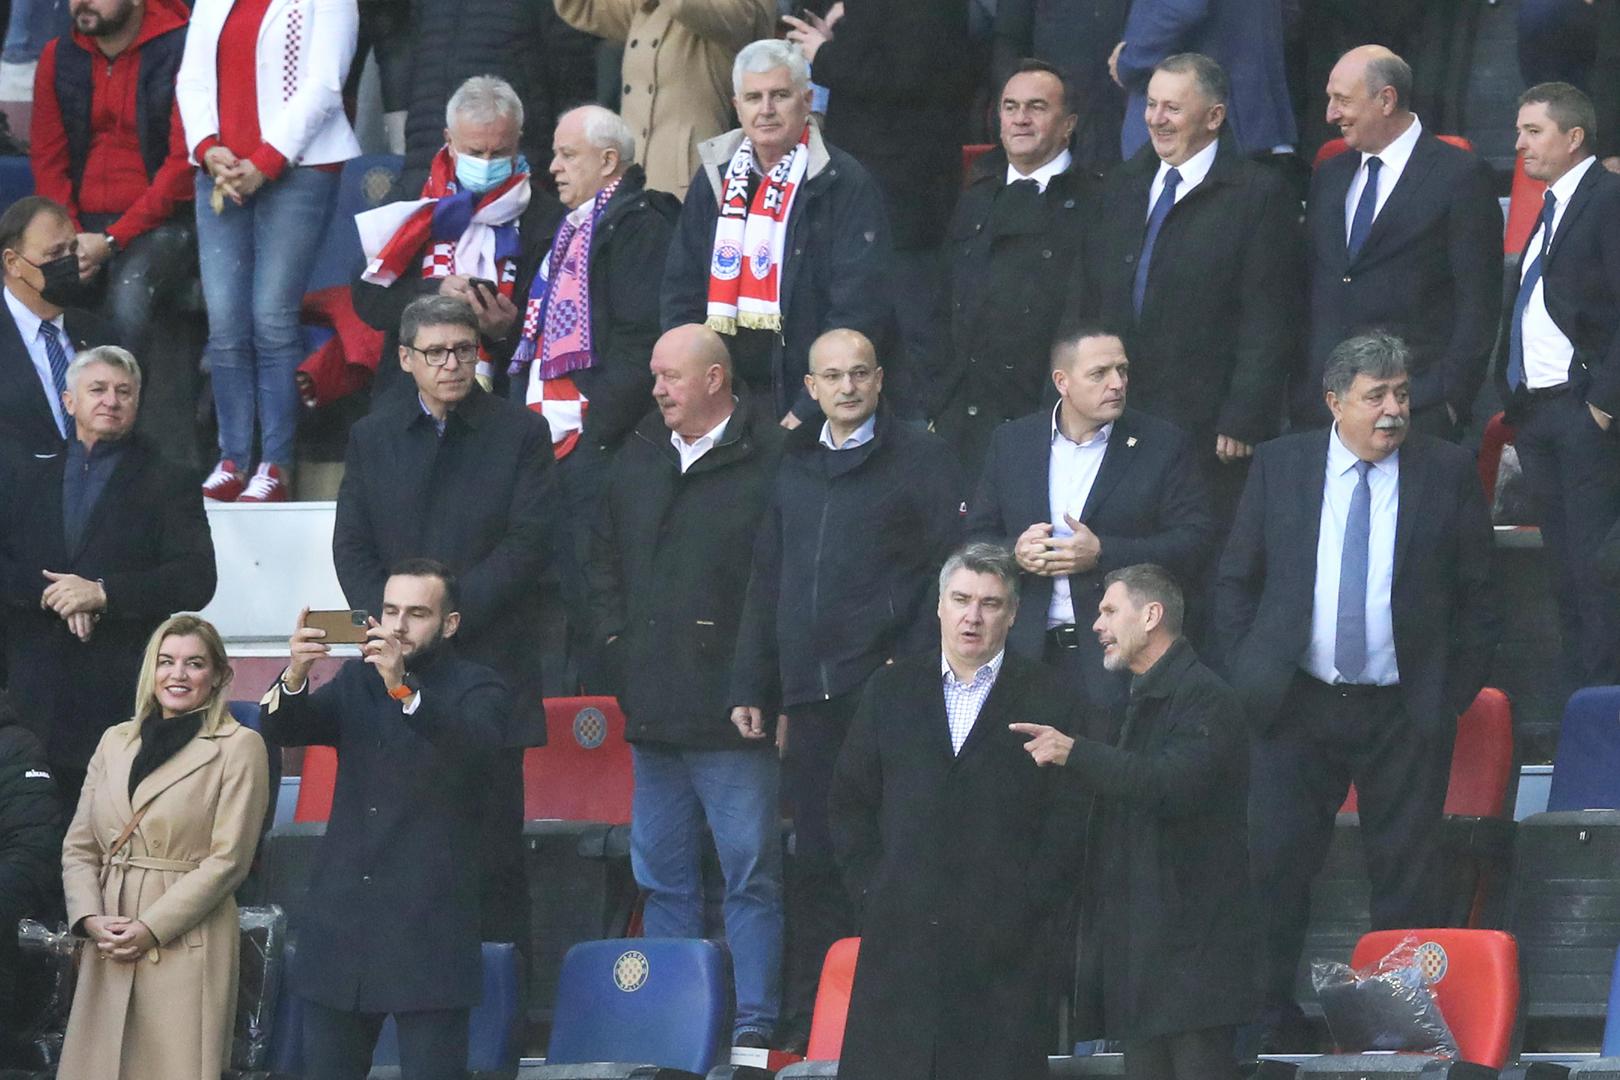 Stigao je i predsjednik RH Zoran Milanović kojega se sve češće može vidjeti na bitnim utakmicama reprezentacije. To nije bio slučaj dok je bio premijer, tada je gledao samo utakmicu sa Srbijom u Maksimiru.